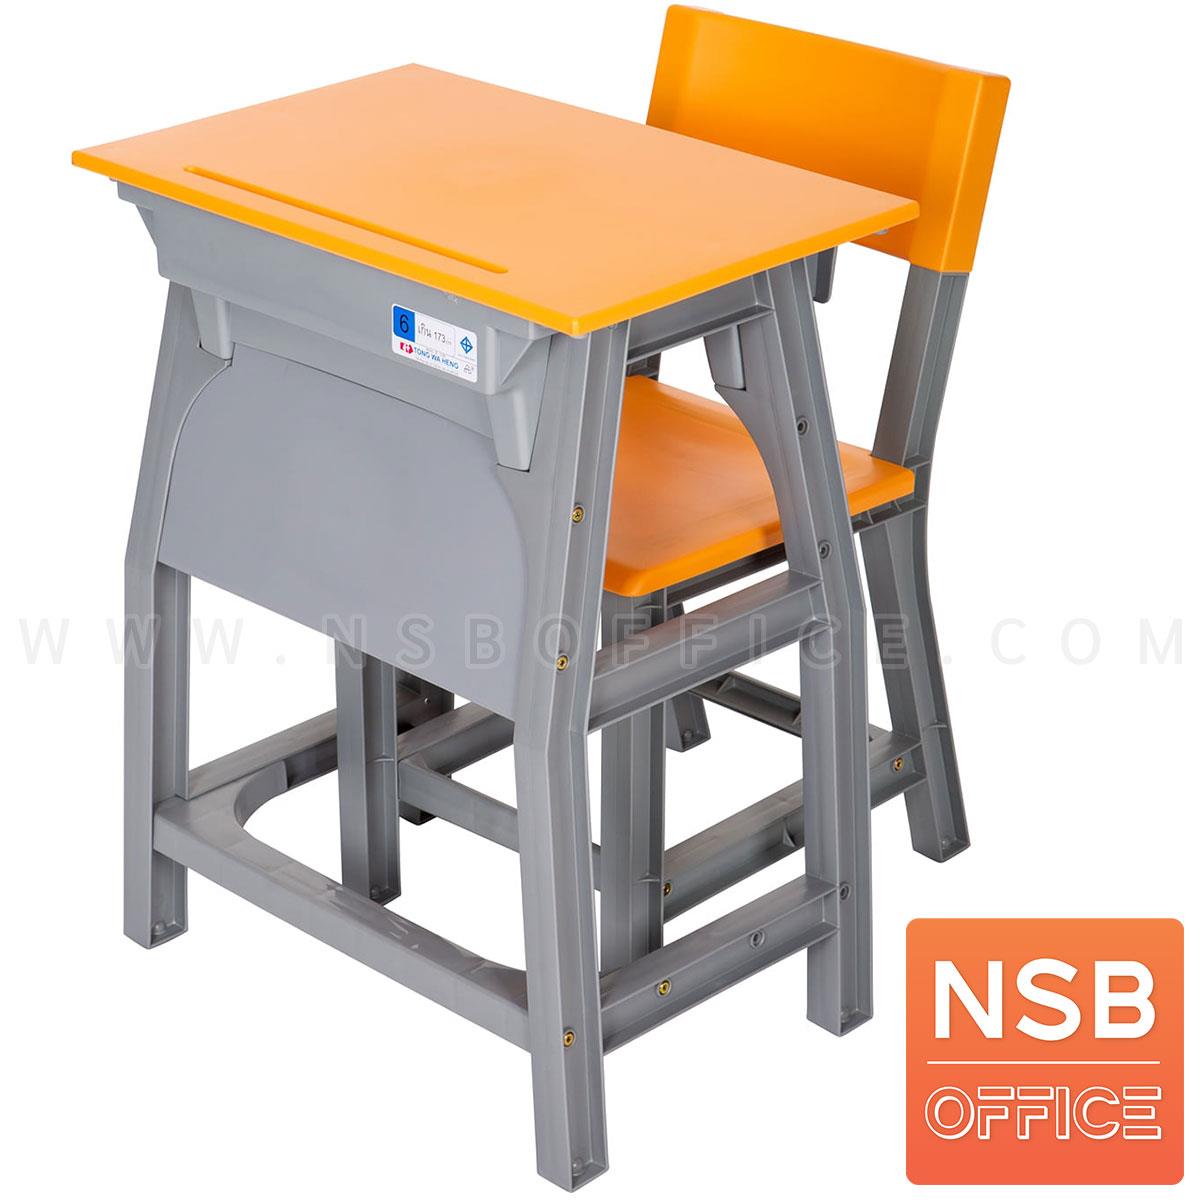 A17A038:ชุดโต๊ะและเก้าอี้นักเรียน รุ่น Apricot (แอปปิคอต)  ระดับชั้นมัธยม ขาพลาสติก